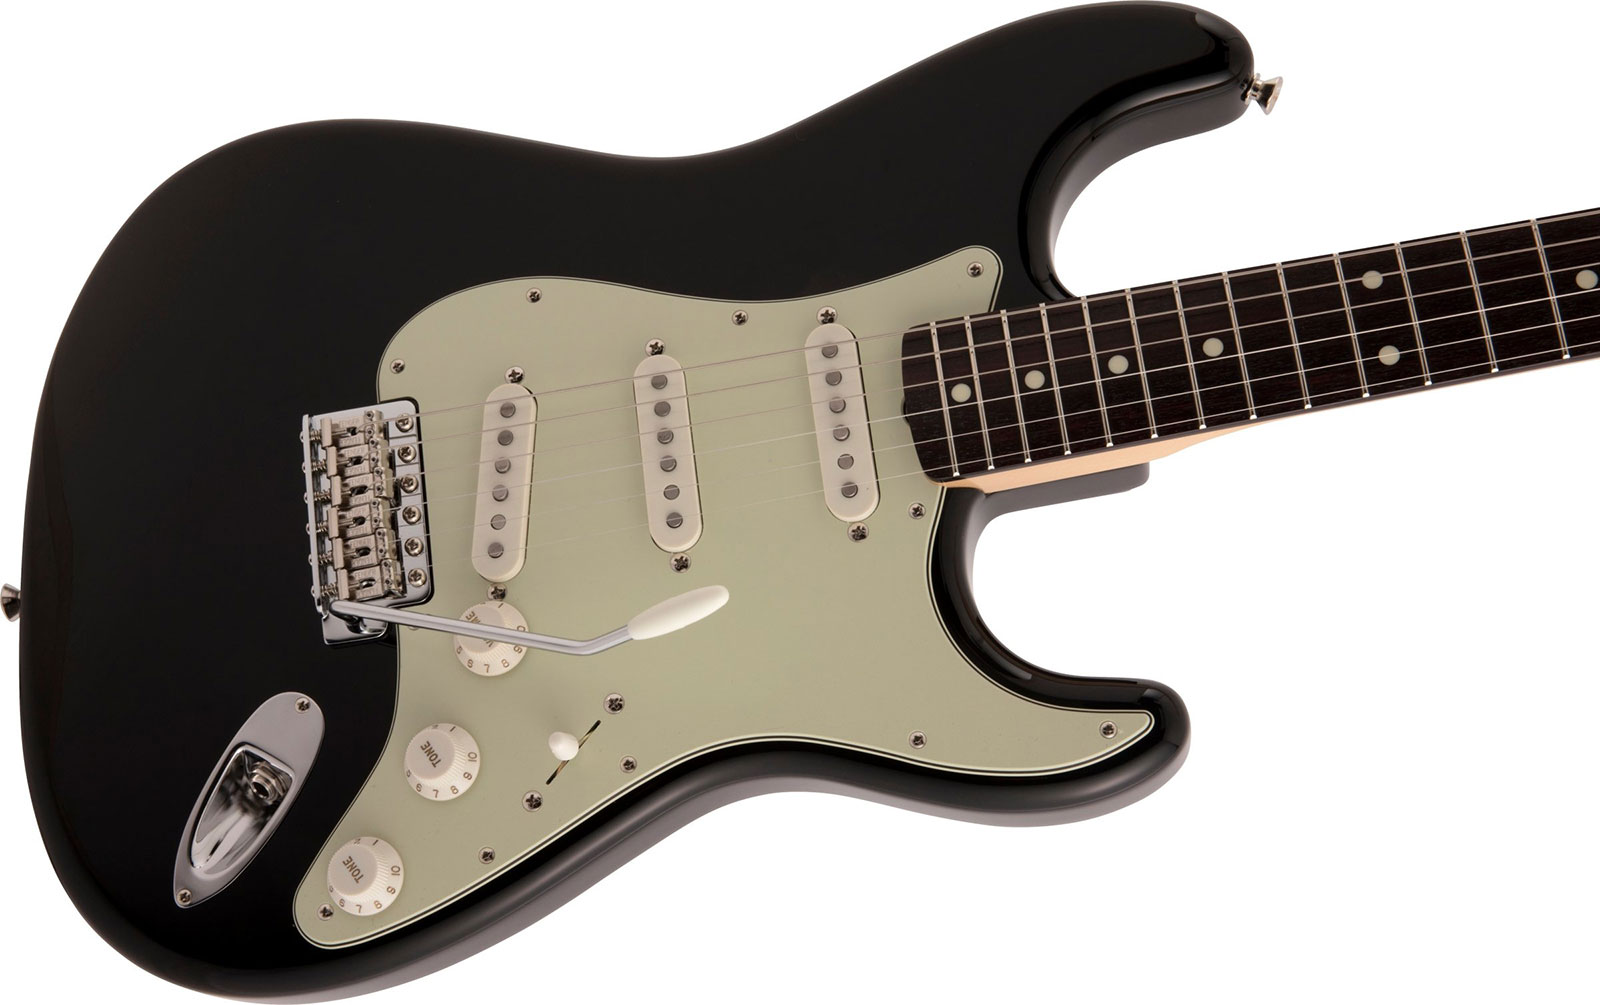 Fender Strat Traditional Ii 60s Mij Jap 3s Trem Rw - Black - Str shape electric guitar - Variation 2